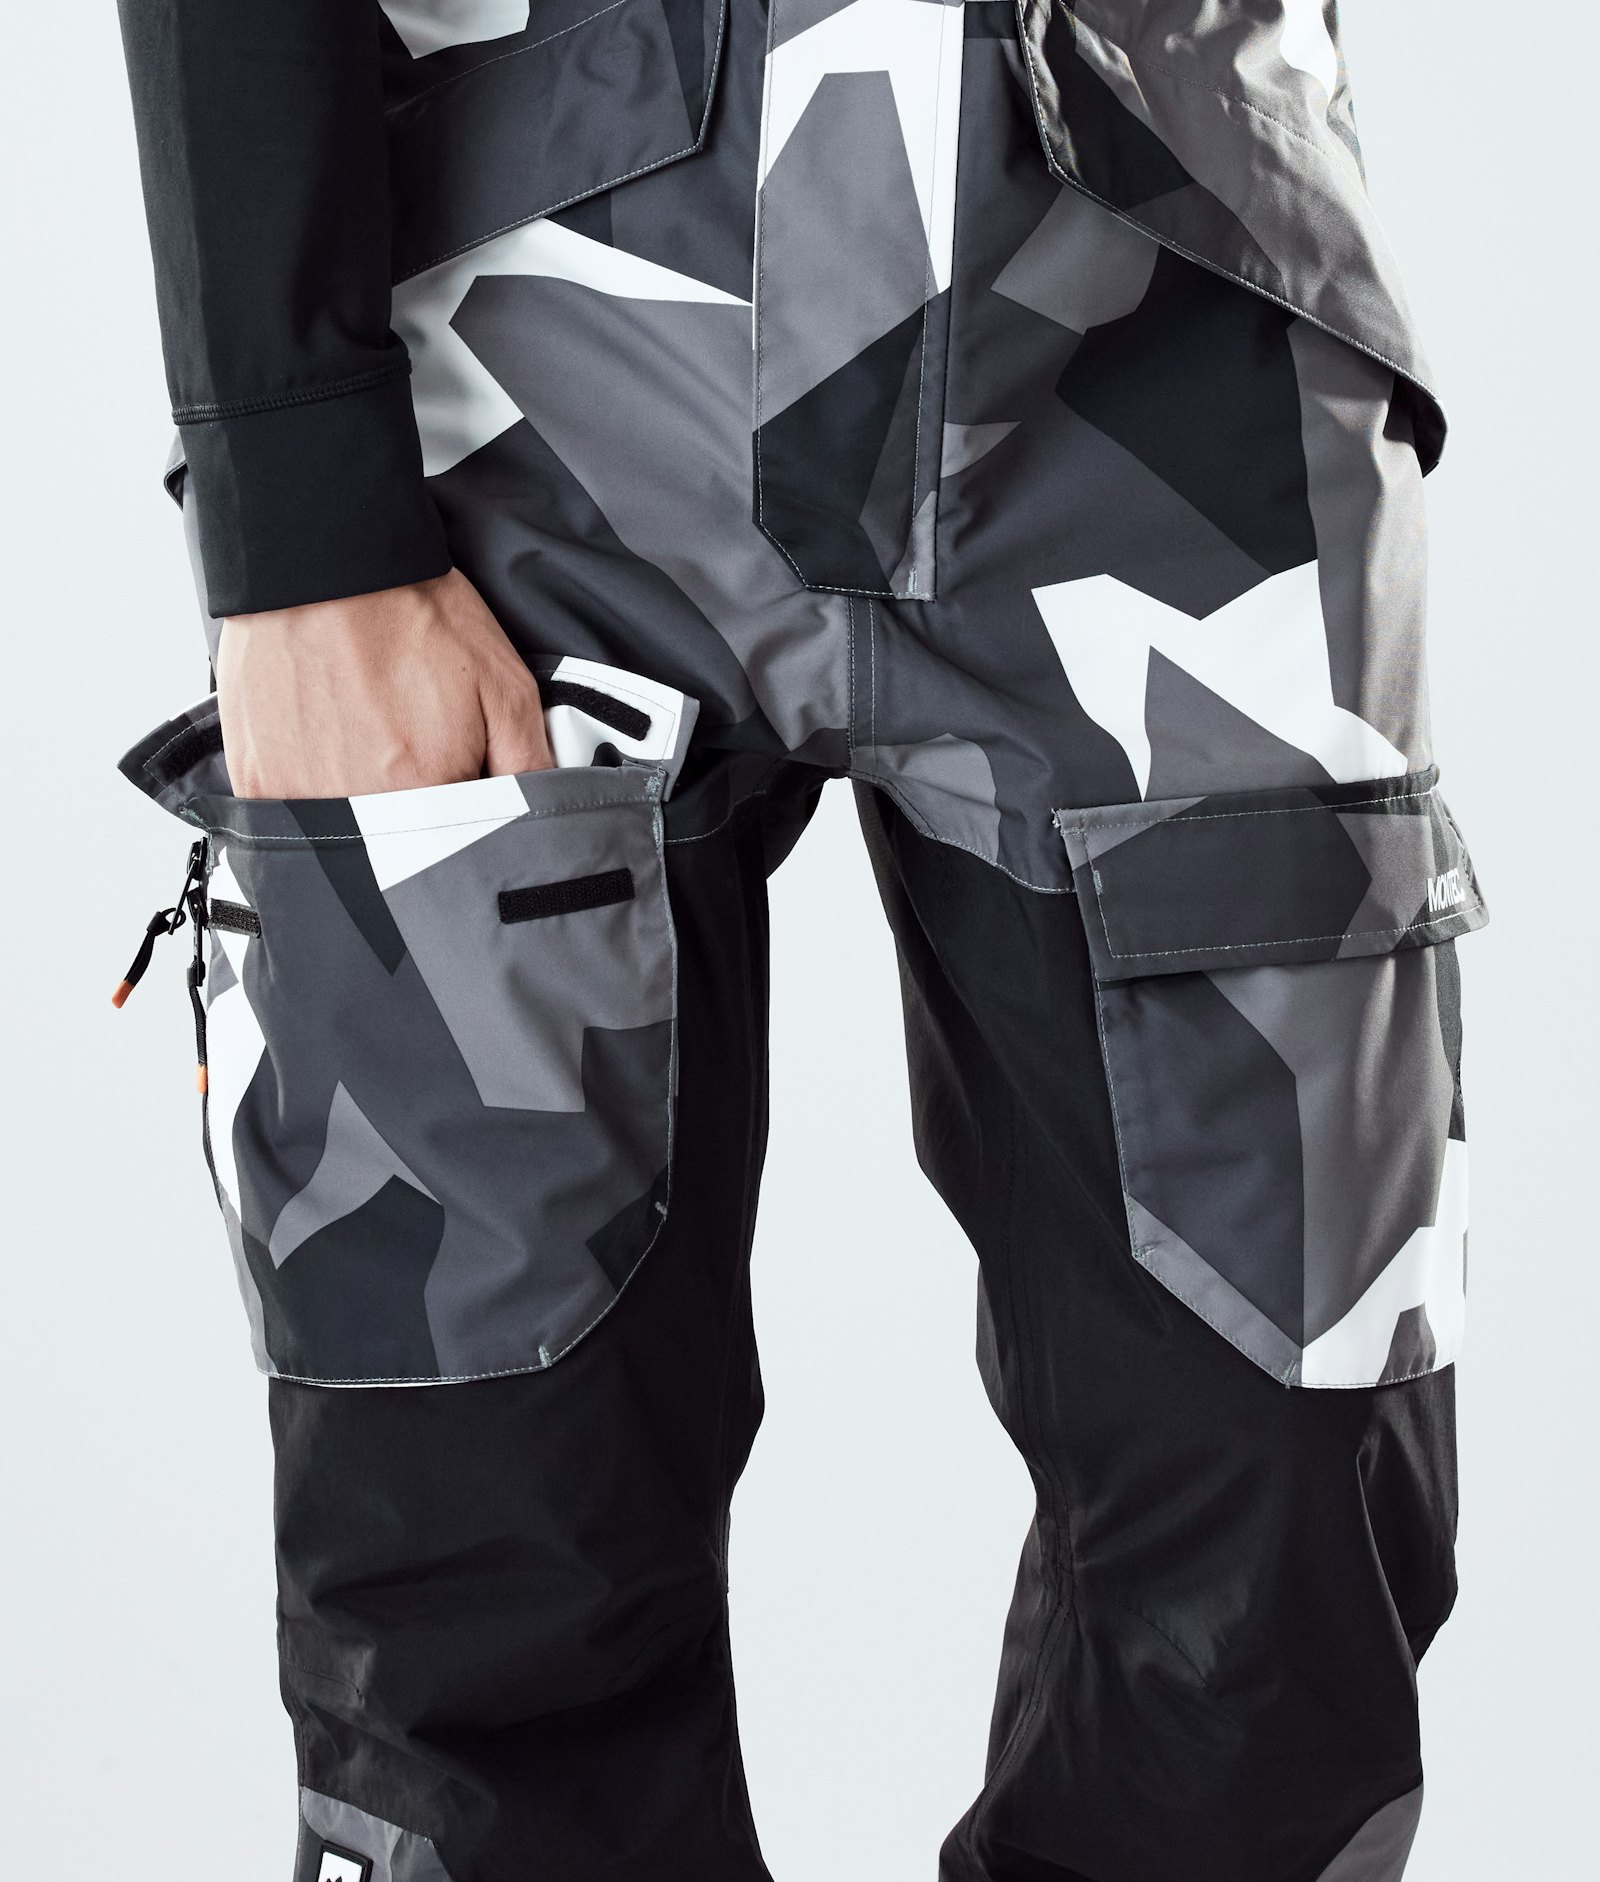 Montec Fawk 2020 Snowboard Pants Men Arctic Camo/Black